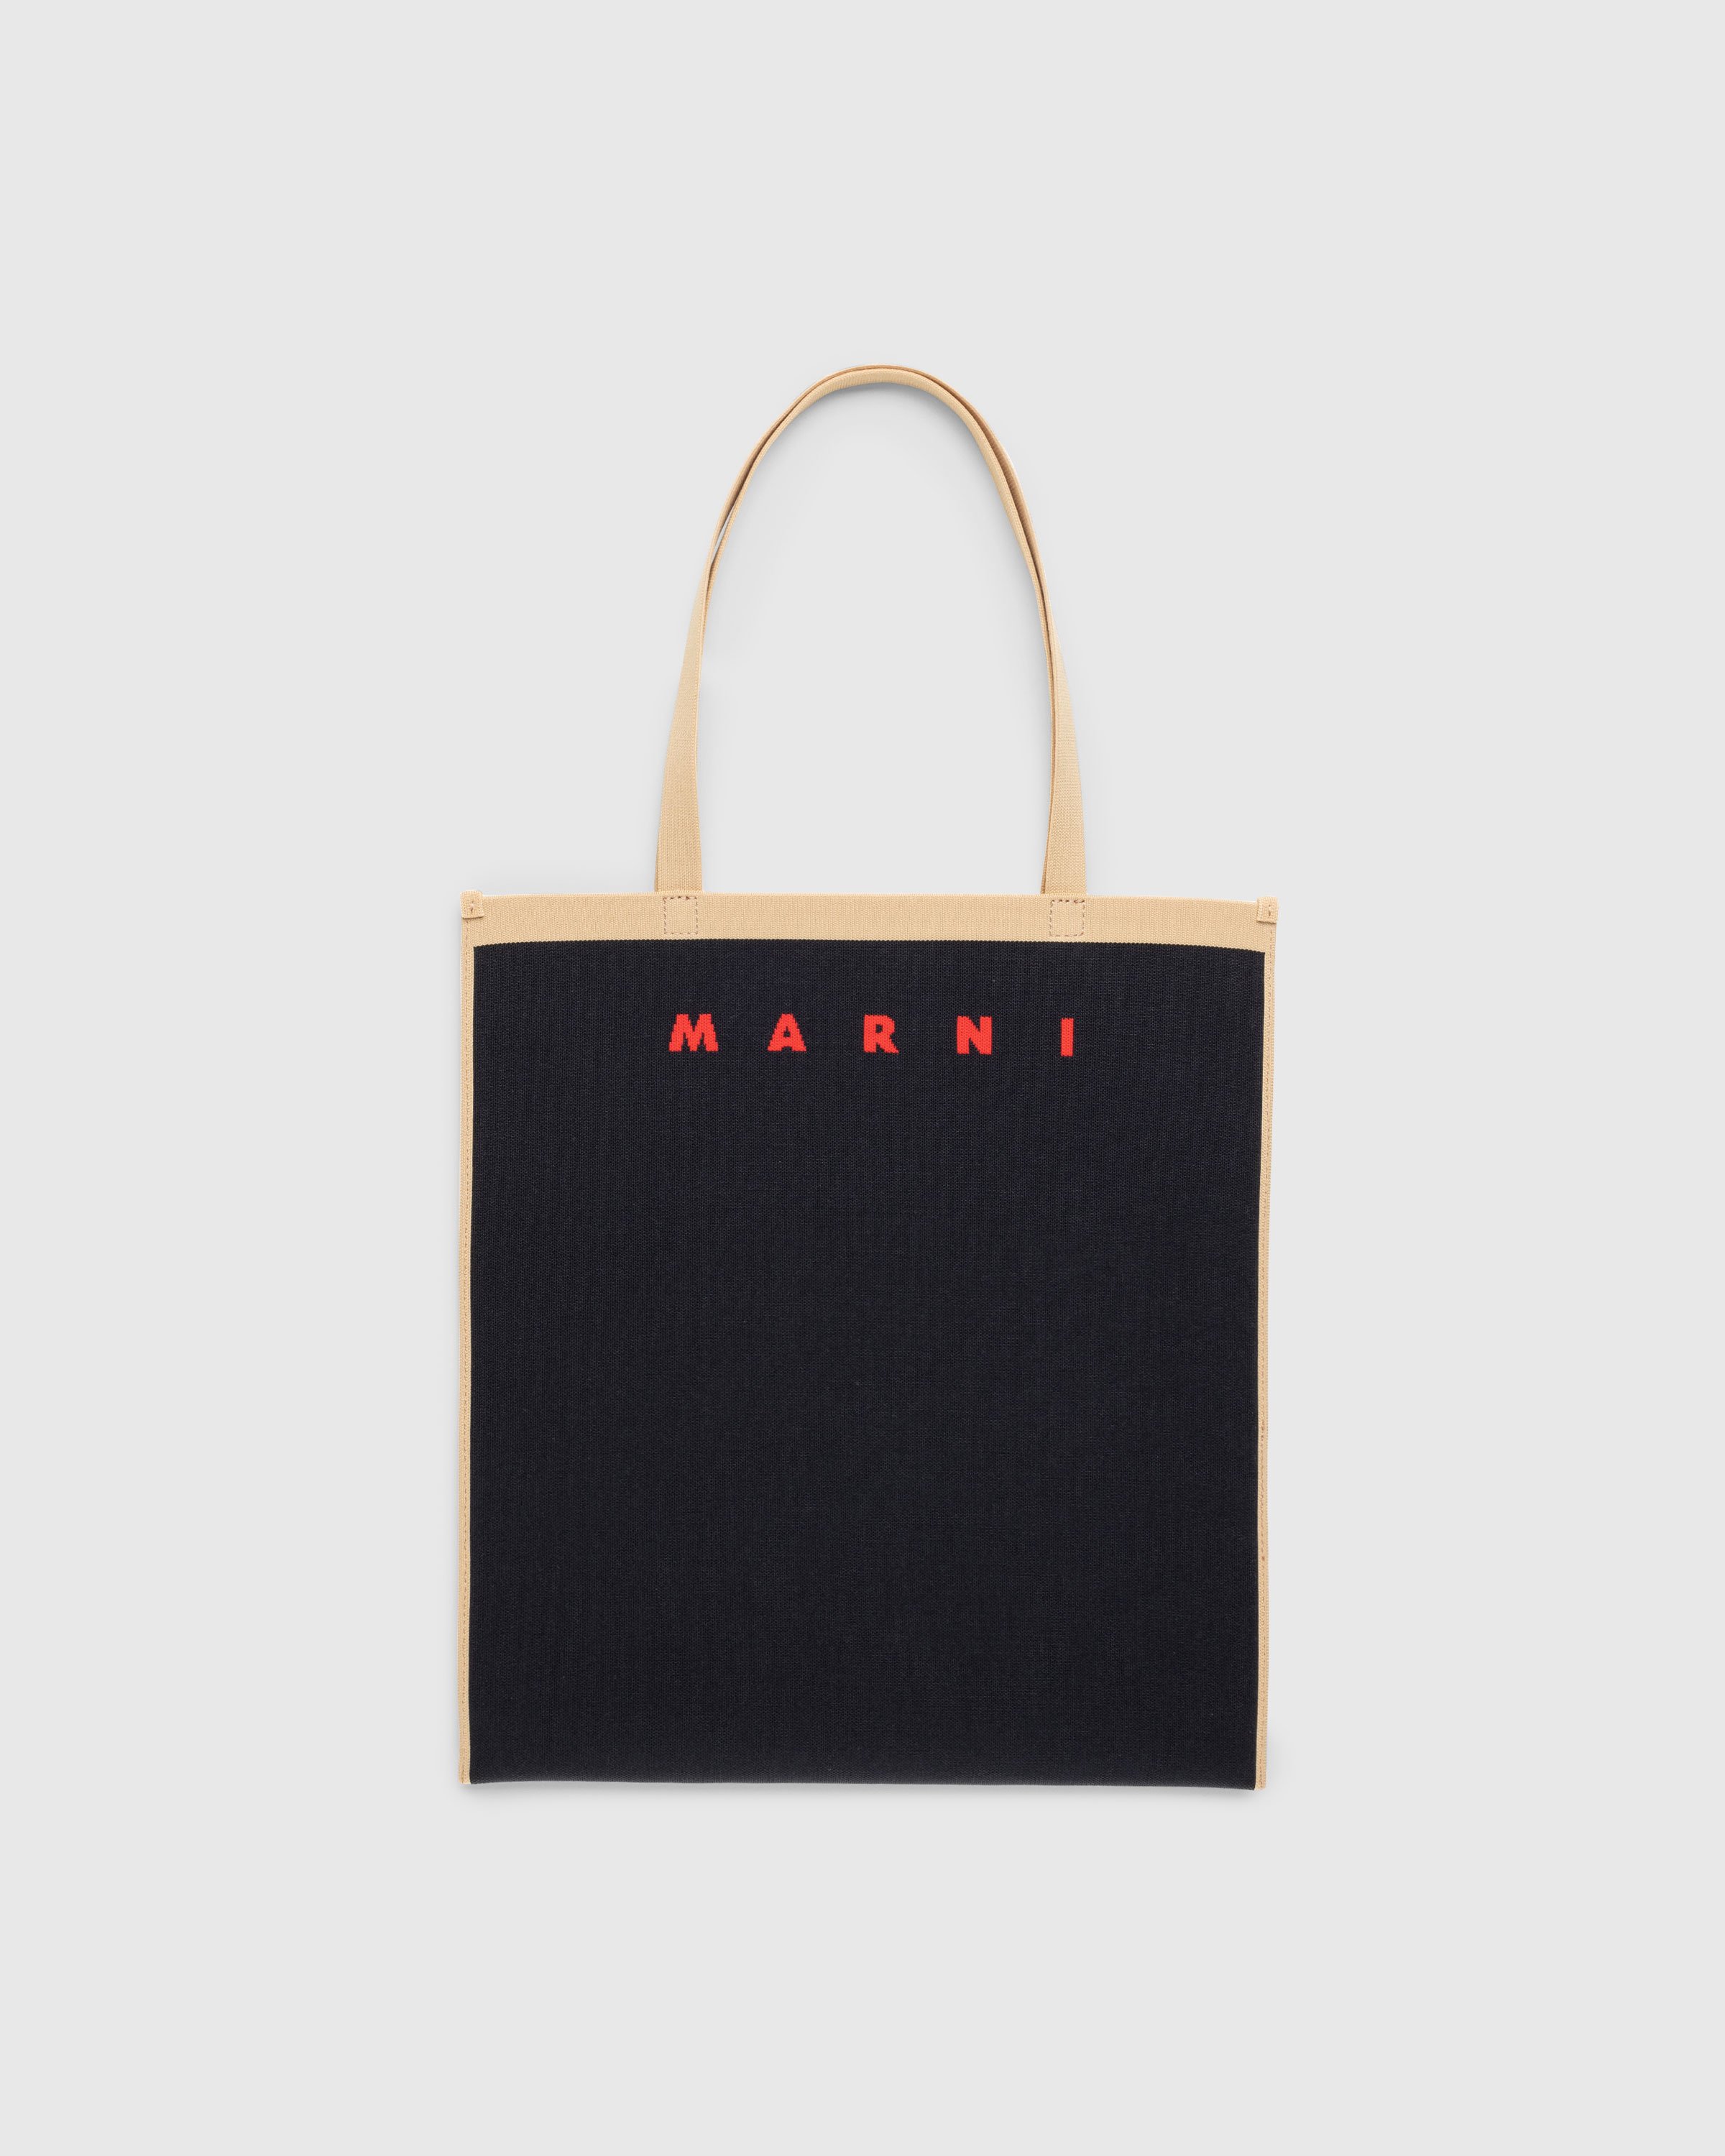 Marni - Shopping Tote Black - Accessories - Black - Image 1